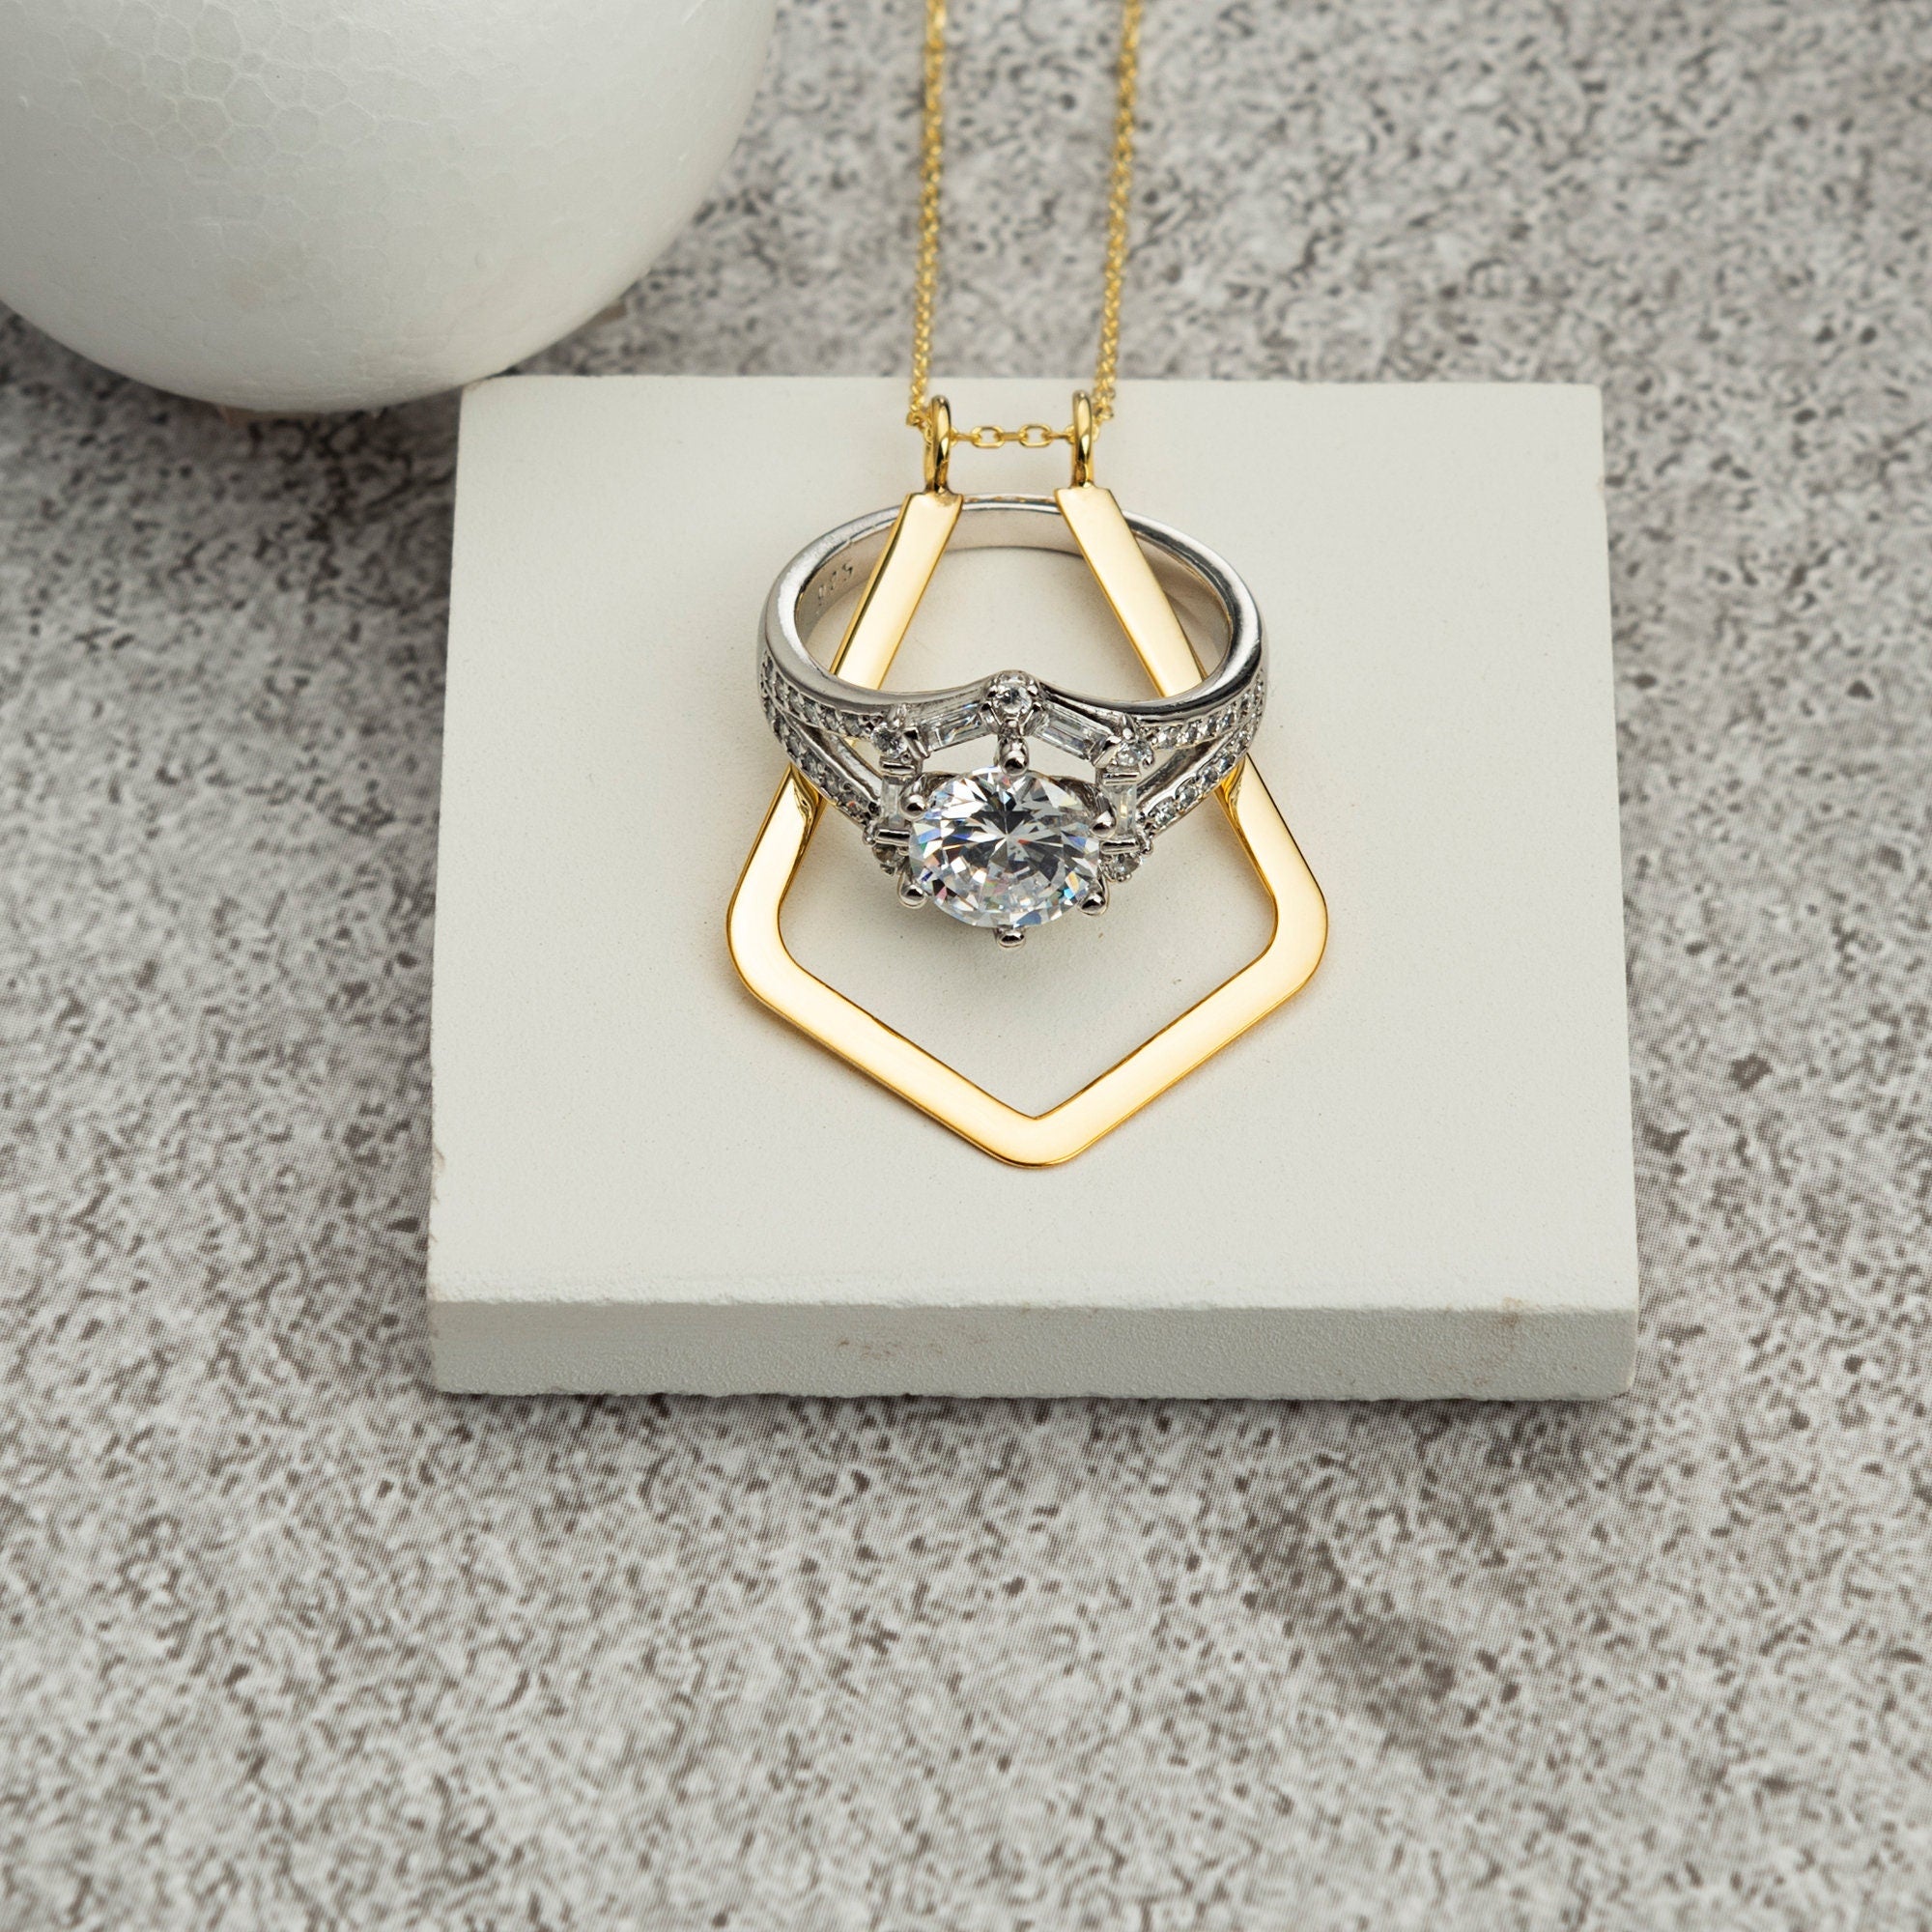 Magic Ring Holder Necklace Wedding / Engagement Ring Holder | Etsy | Ring  holder pendant, Ring holder necklace, Engagement ring holders